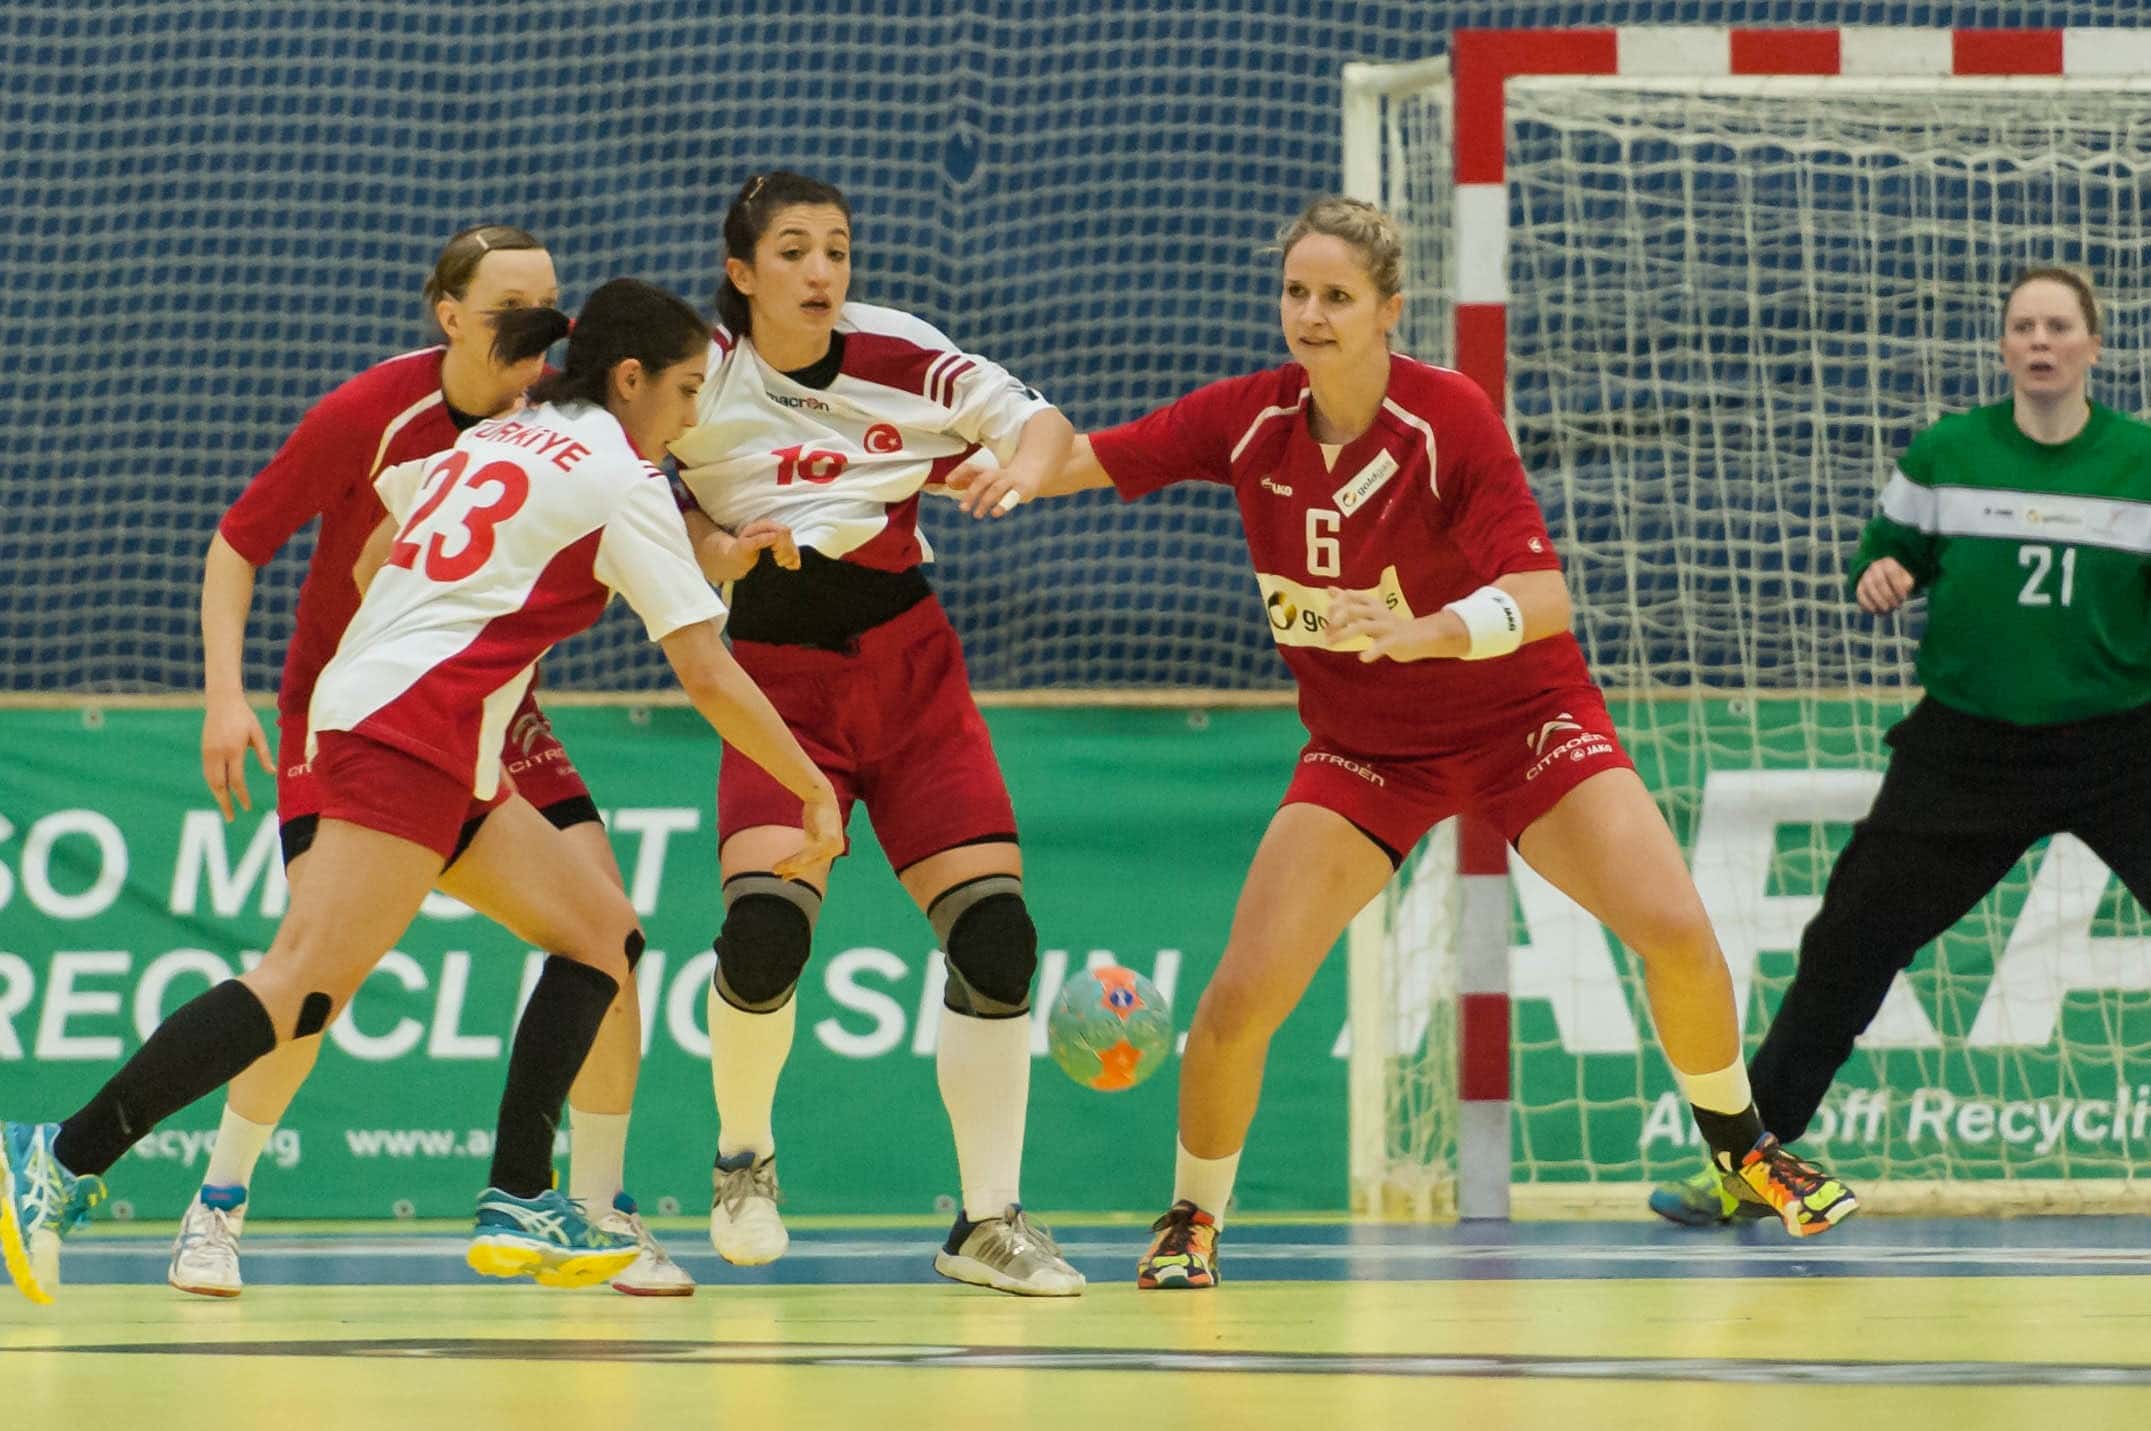 Turkey handball team